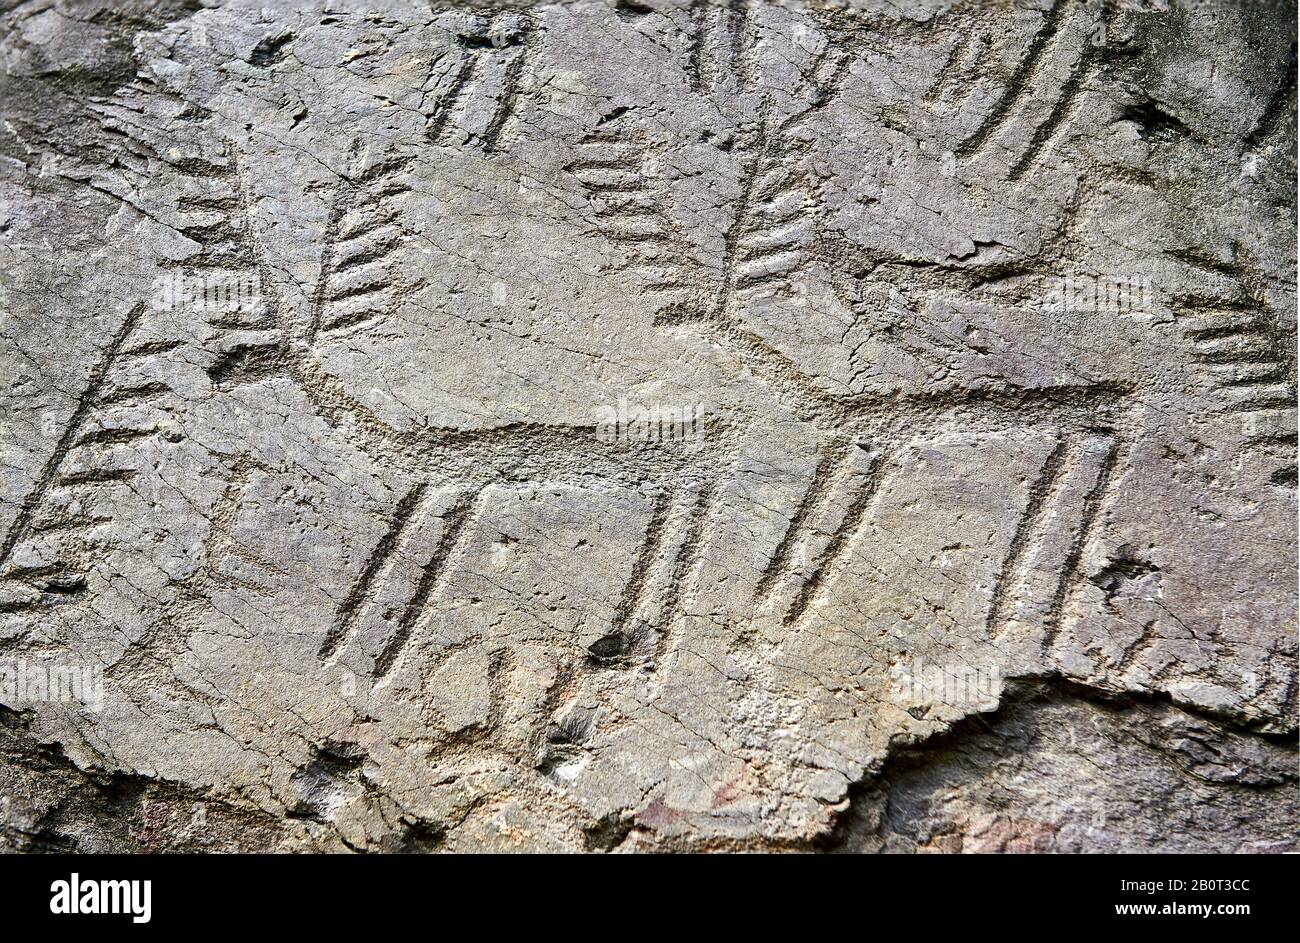 Prähistorische Petroglyphen, Felsschnitzereien, von Rehen in einer uralten Schnupperkuppe, die von den alten Camuni-Menschen in der Kupferzeit um die 3. Mille gehauen wurde Stockfoto